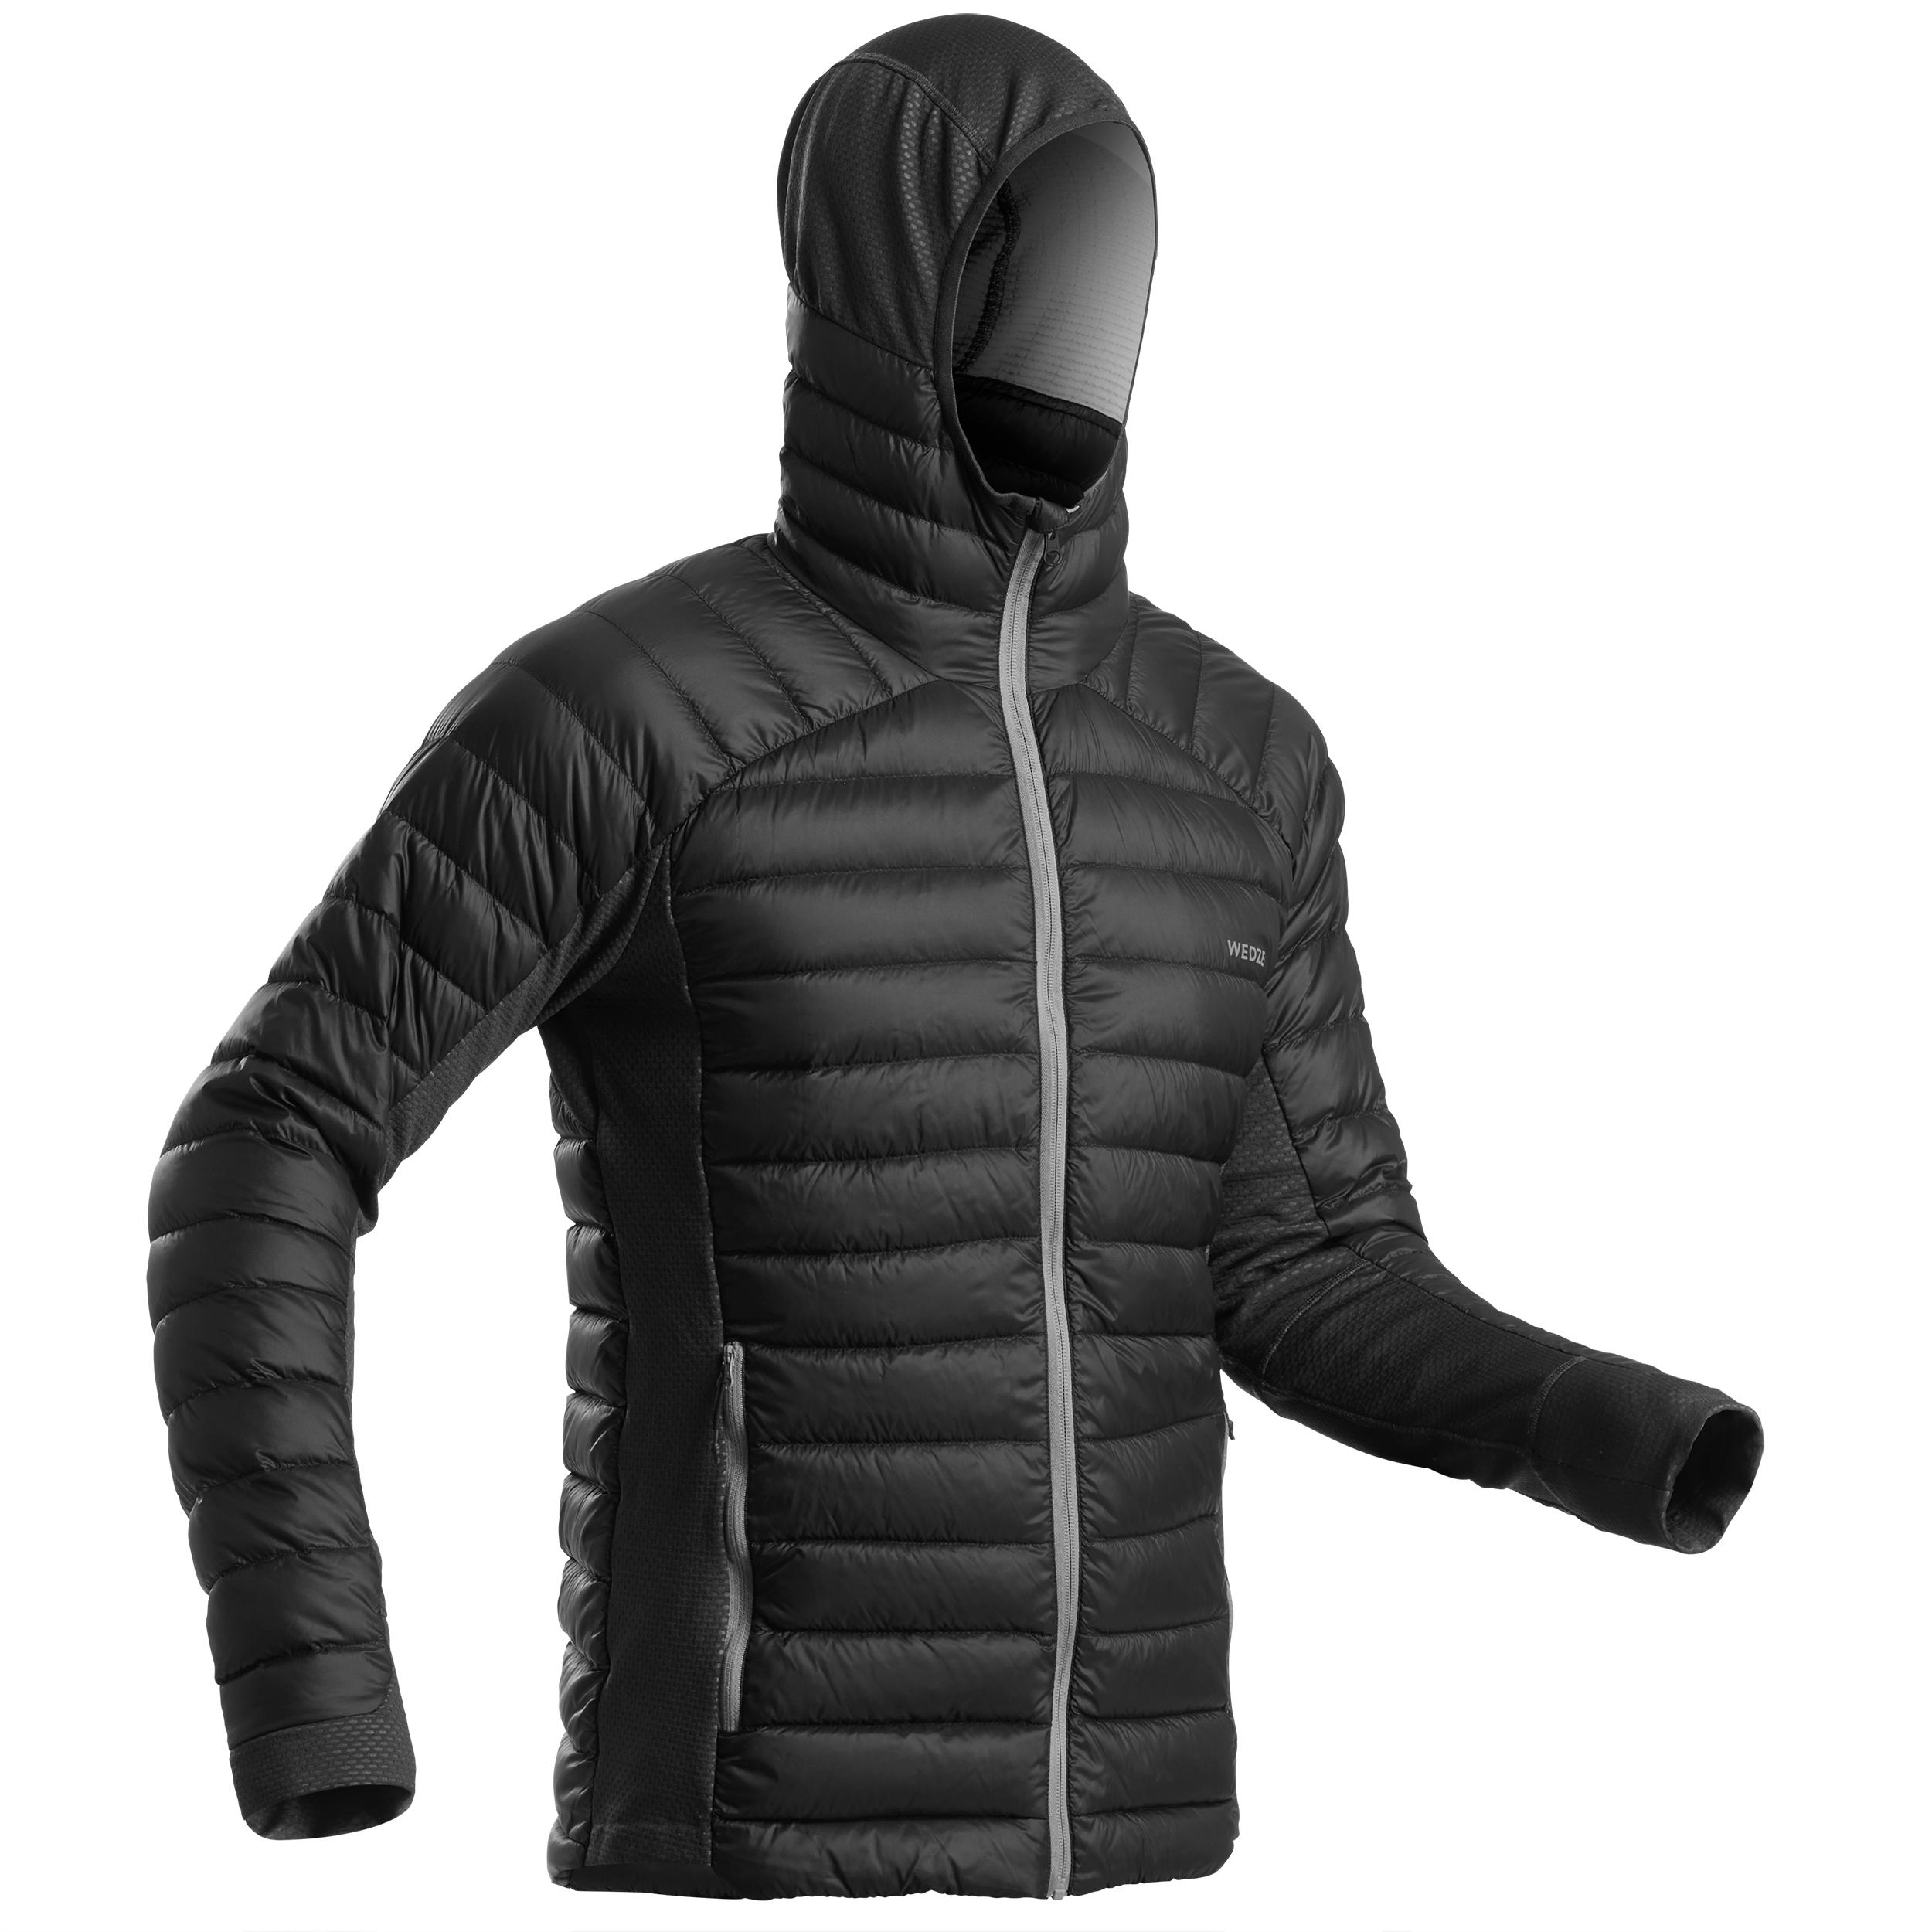 Manteau en duvet homme – Ski FR 900 gris foncé - WEDZE